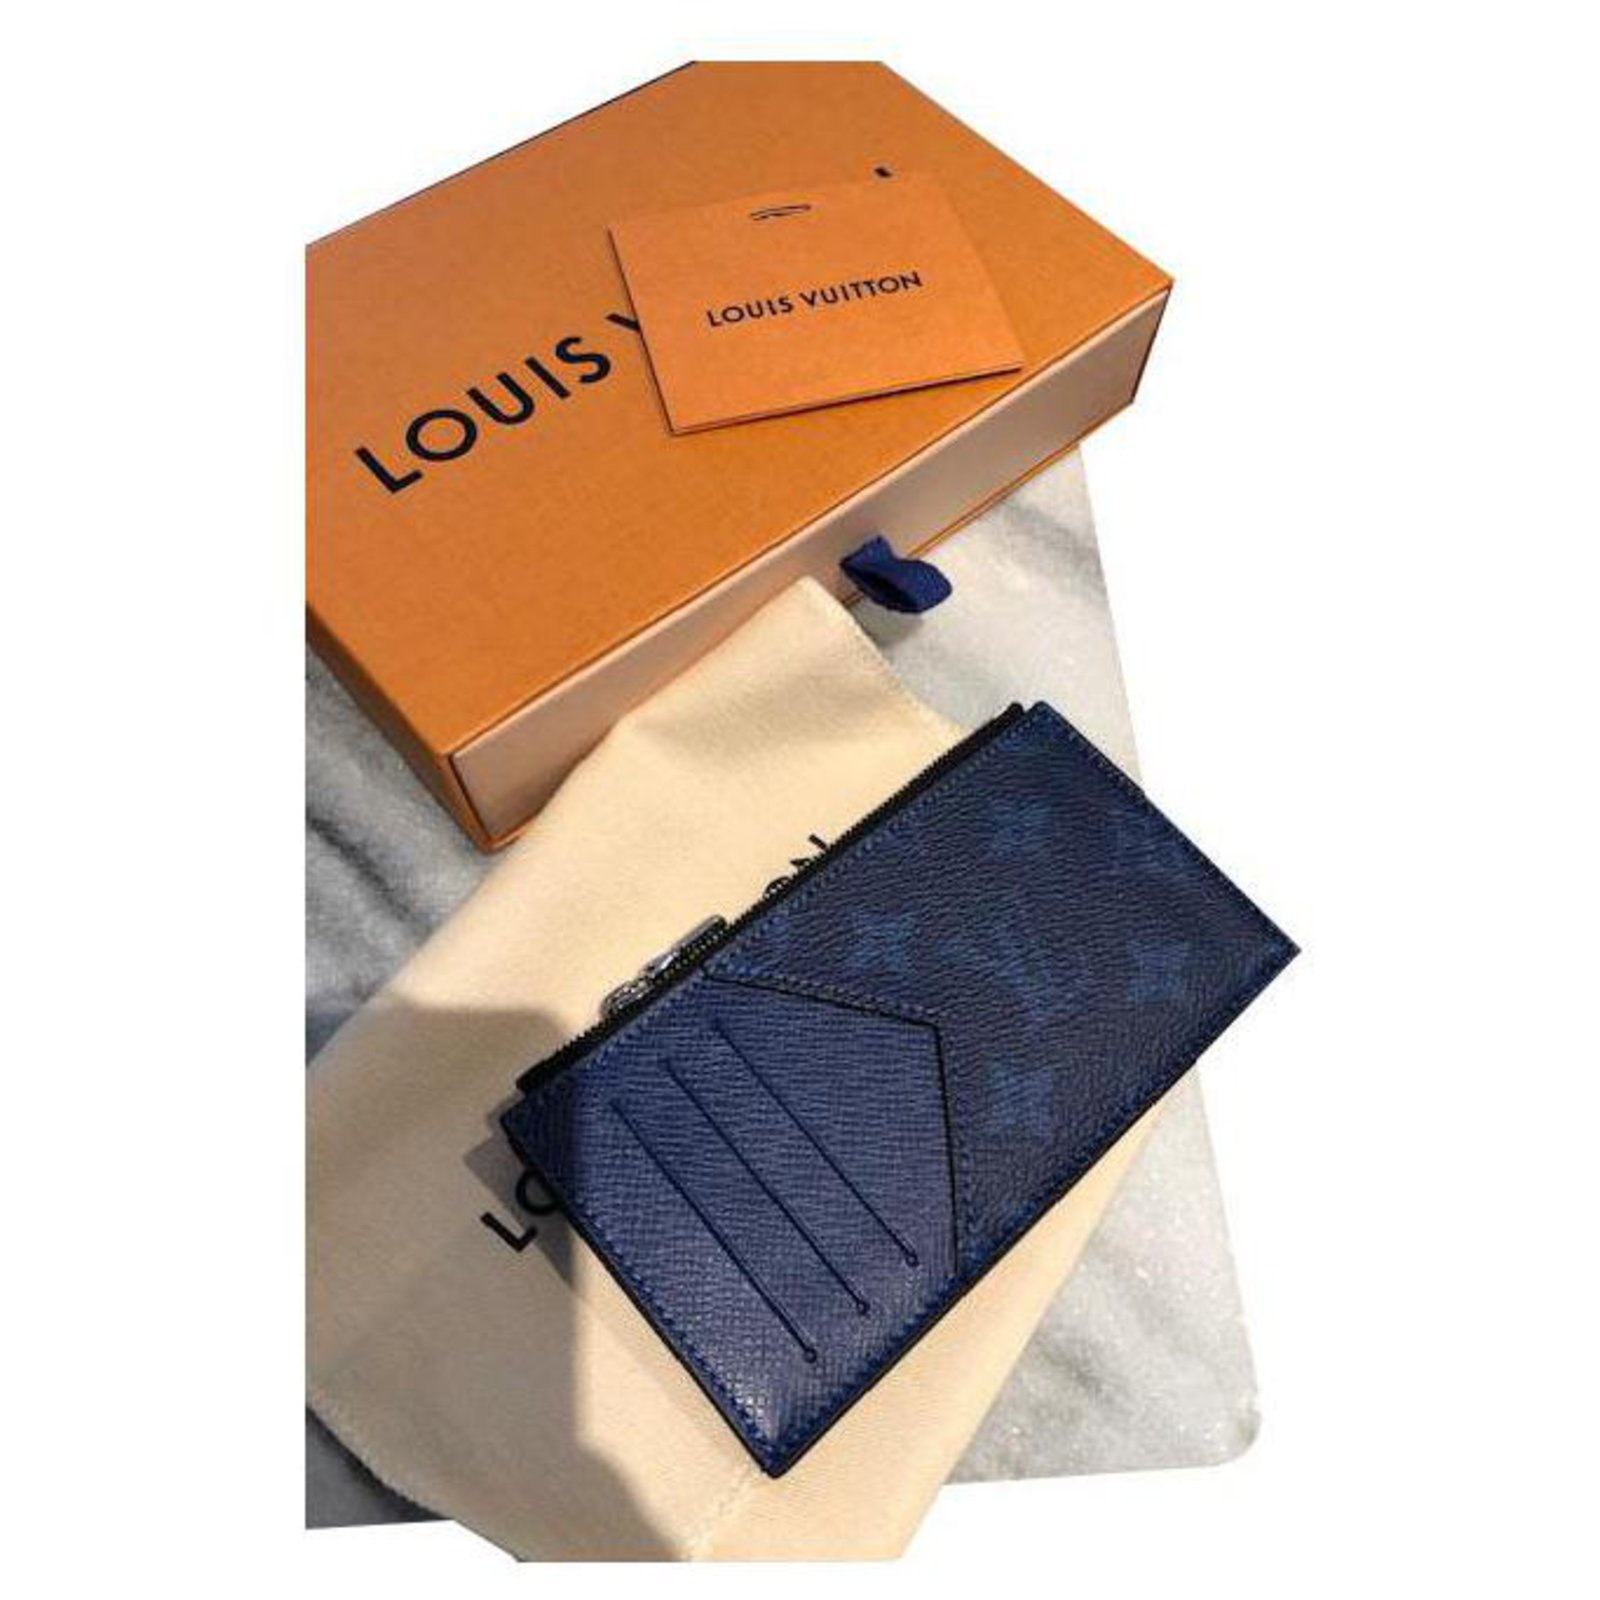 Louis Vuitton Coin Card Holder in Taigarama Cobalt Blue